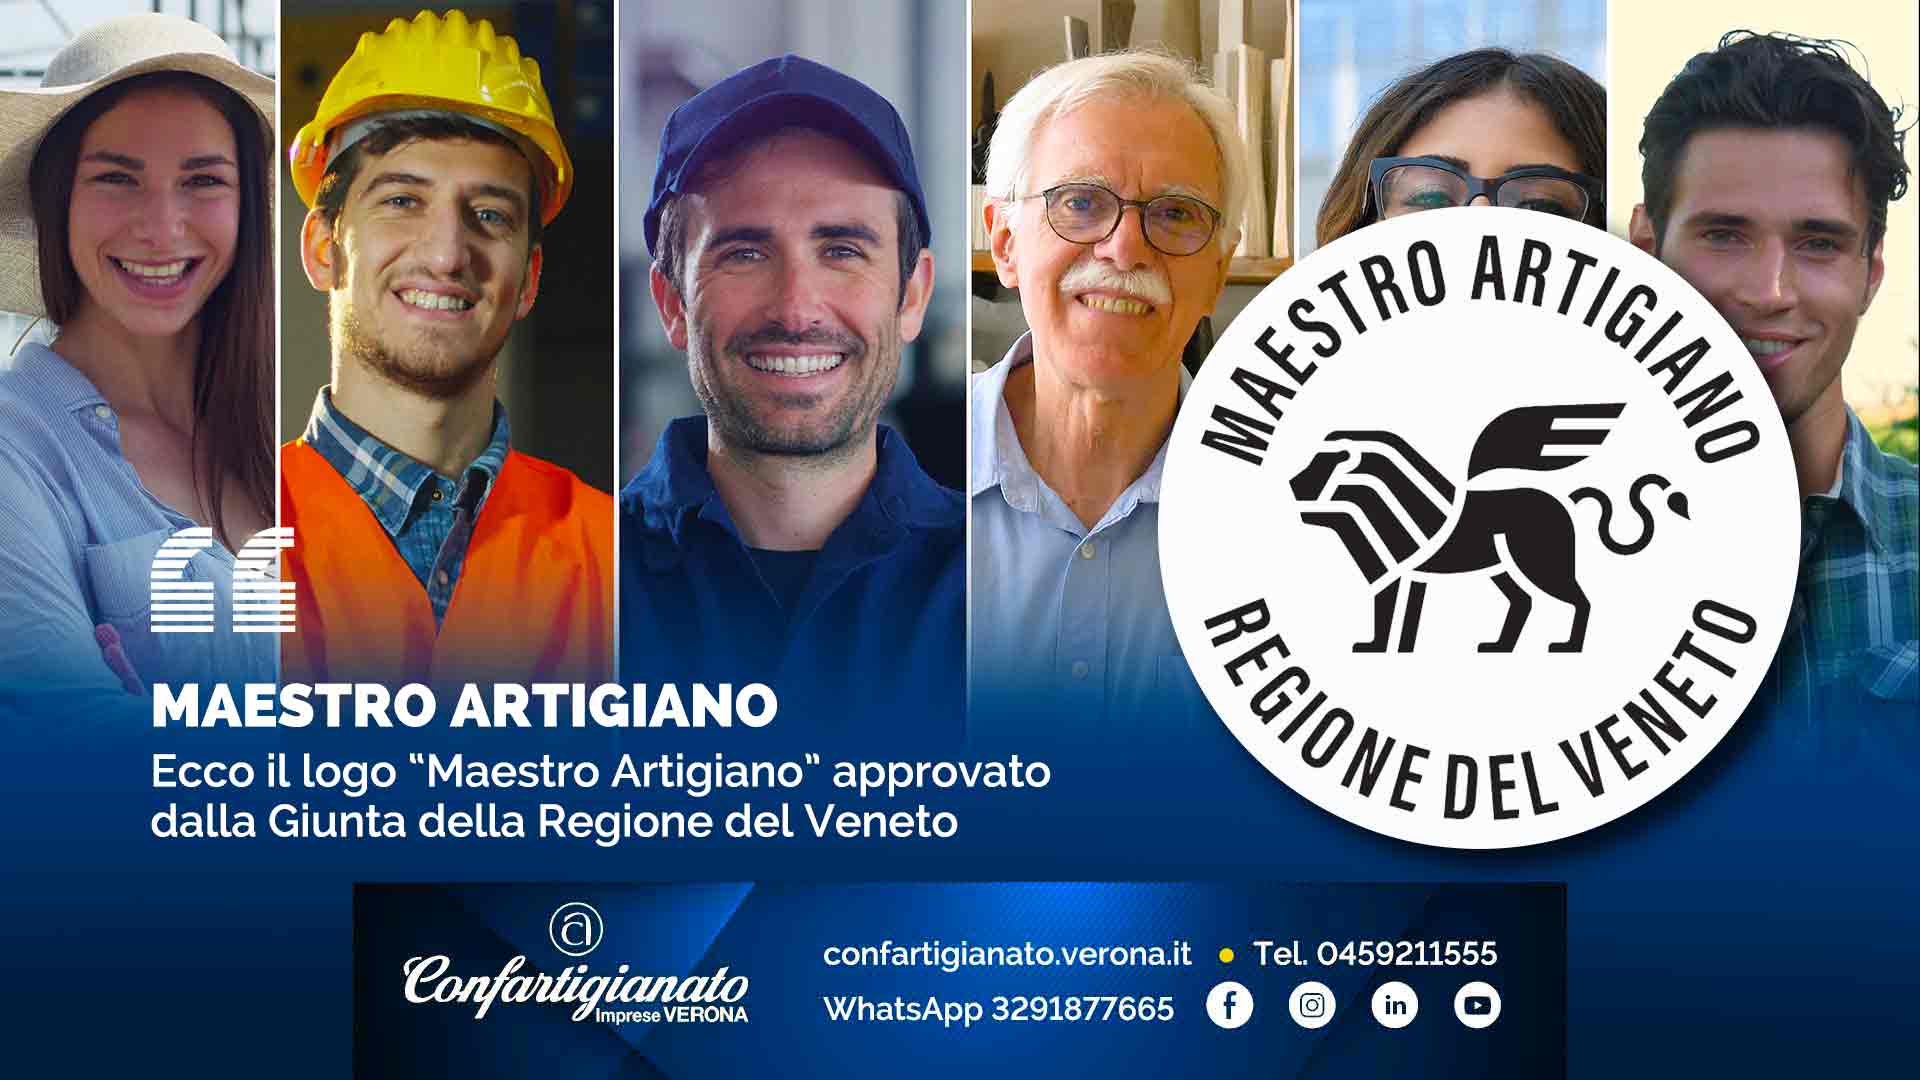 MAESTRO ARTIGIANO – Ecco il logo “Maestro Artigiano” approvato dalla Giunta della Regione del Veneto